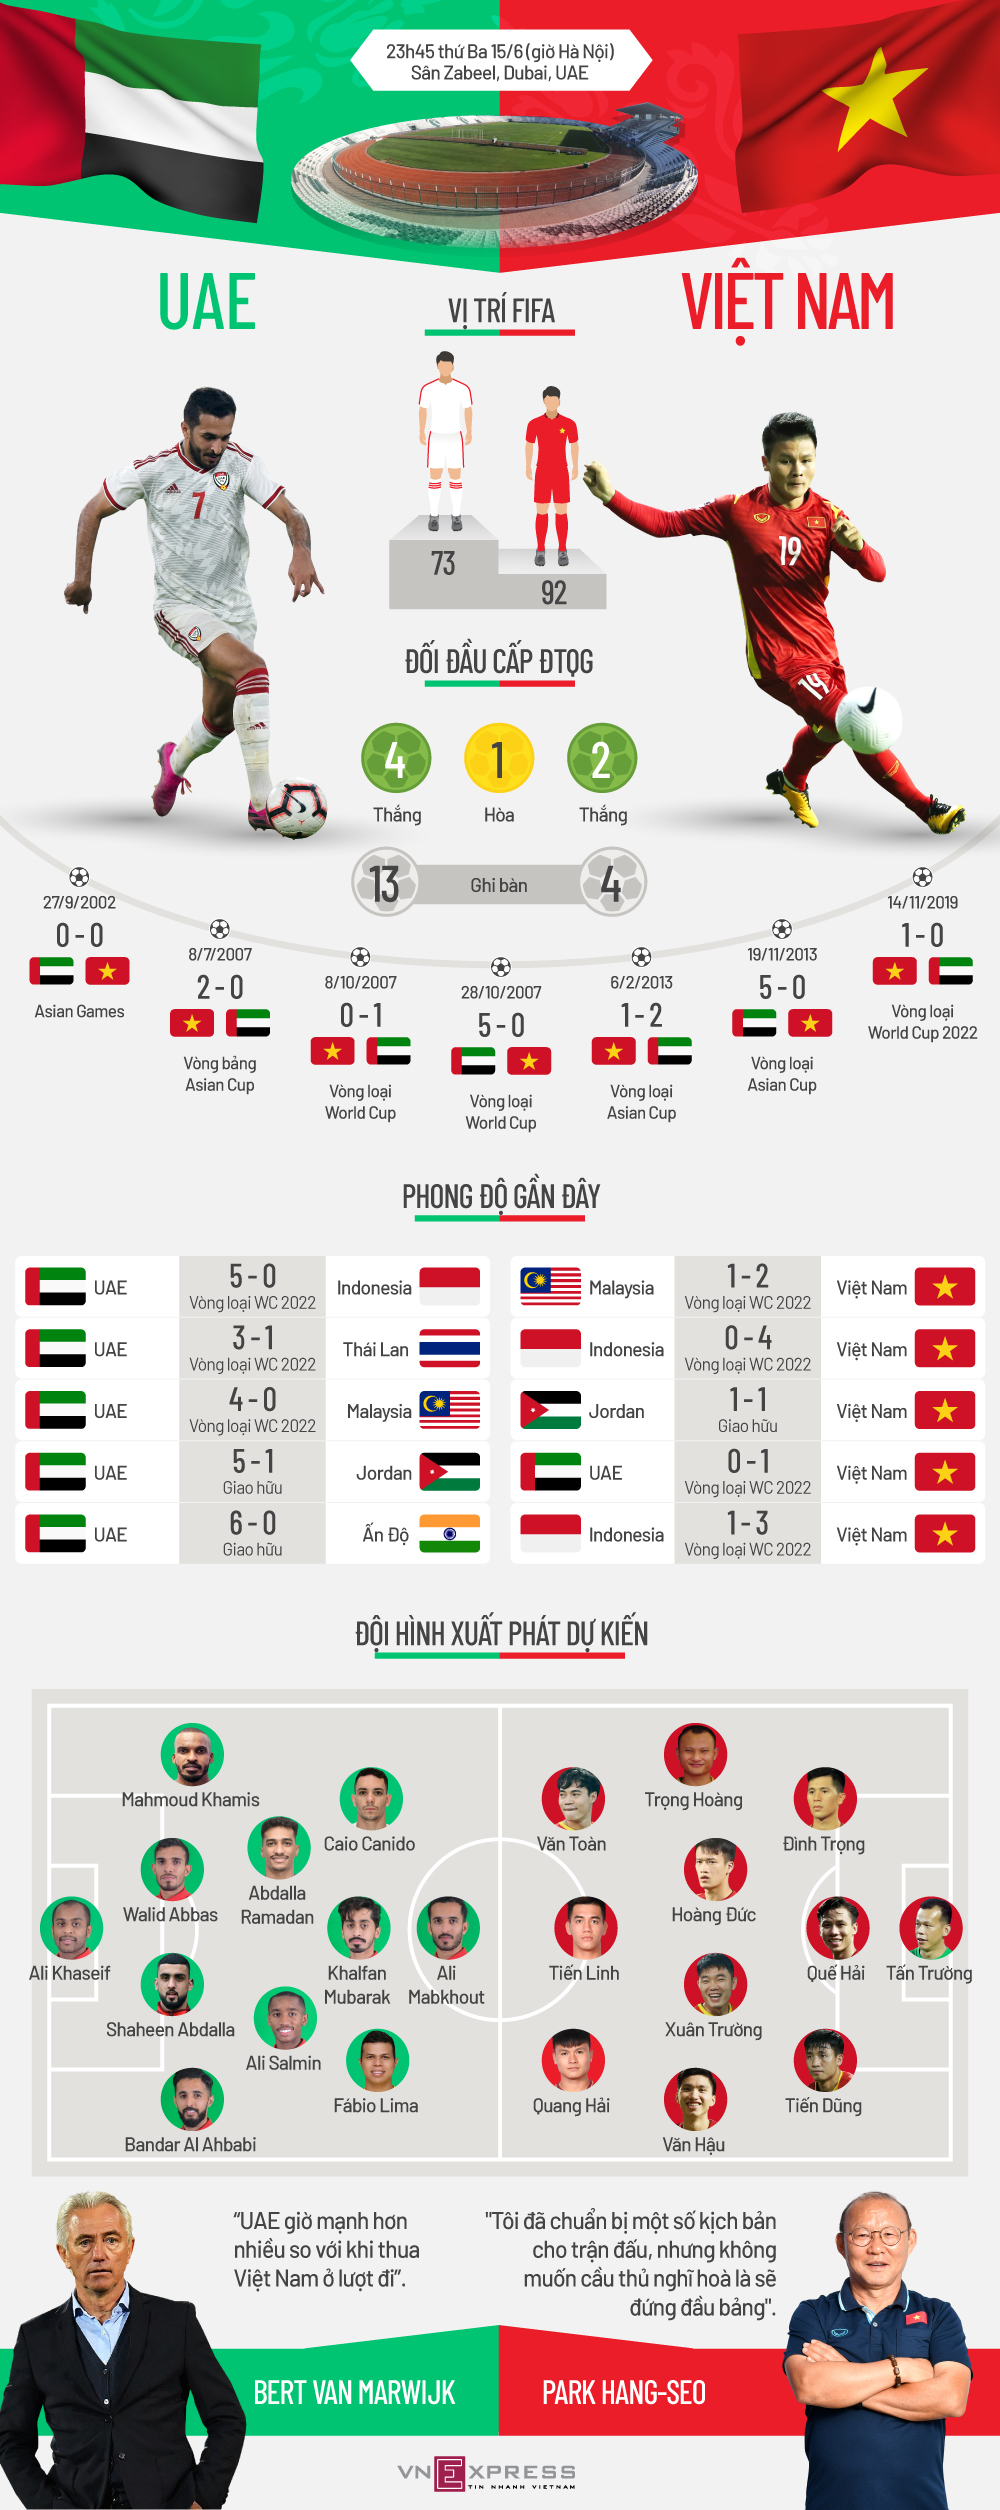 Tương quan trước trận UAE - Việt Nam